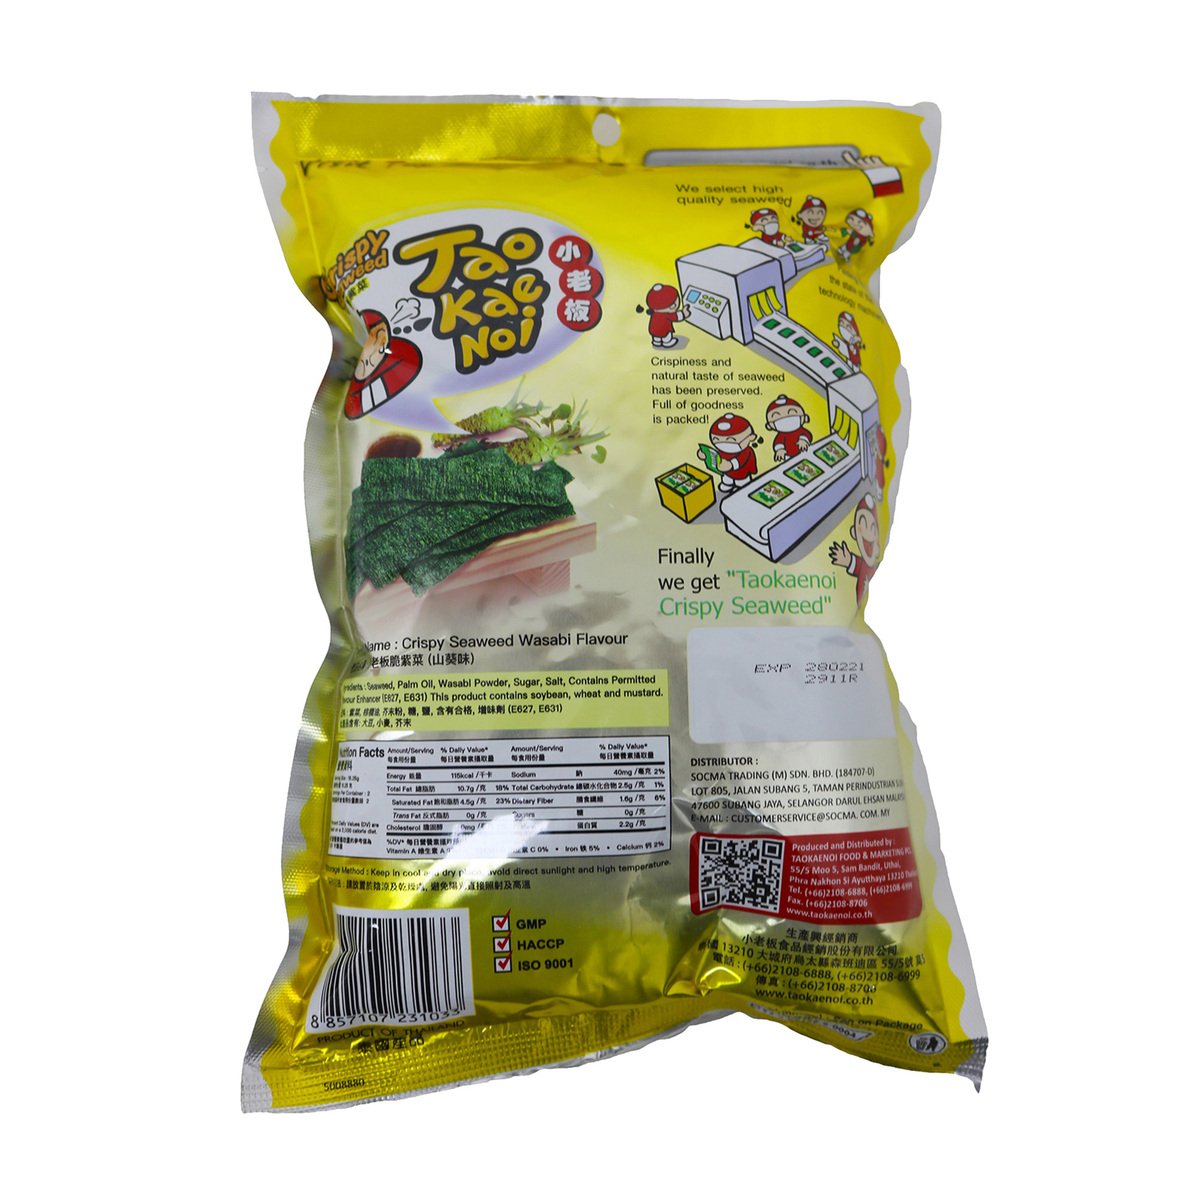 Tao Kae Noi Seaweed Wasabi 32.5g